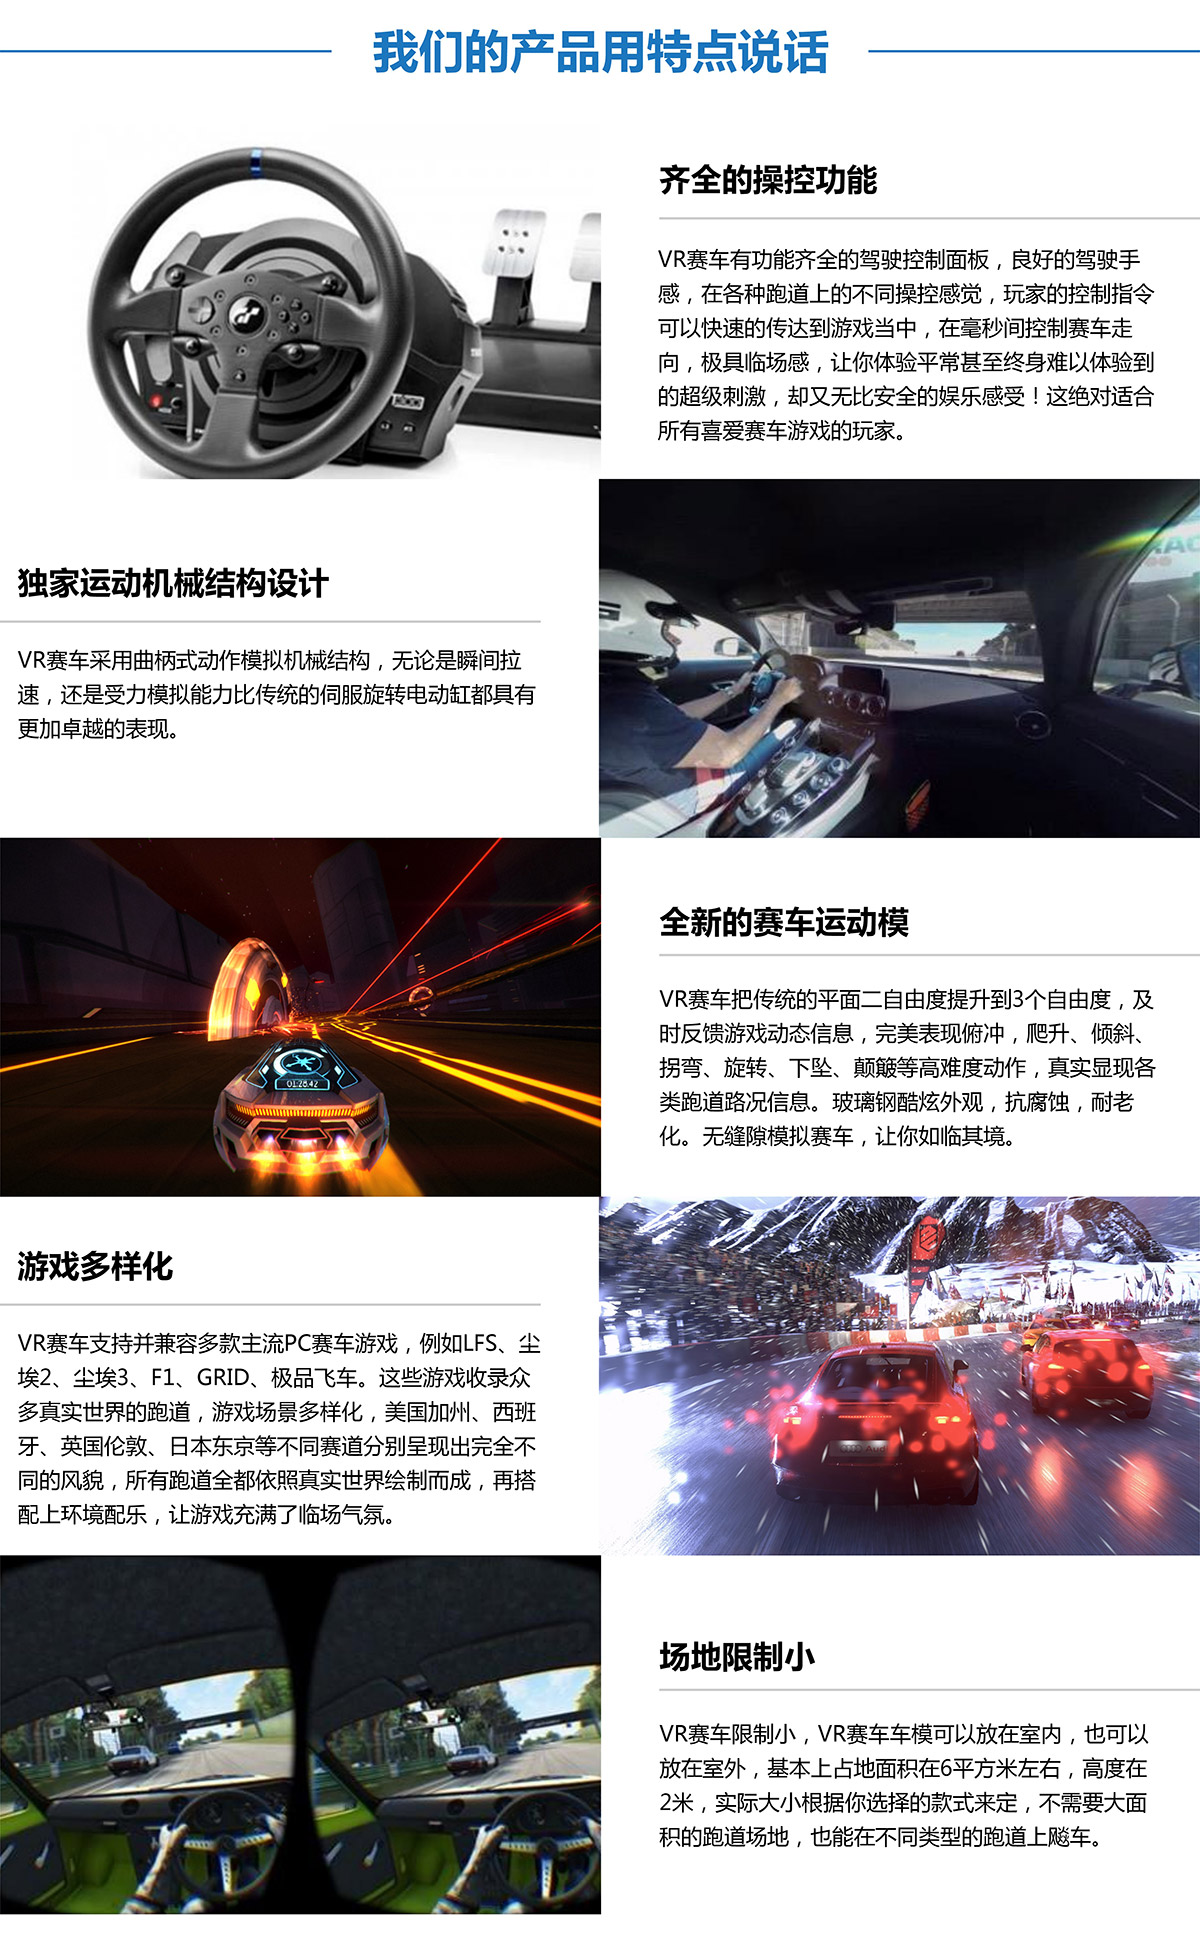 四川虚拟VR赛车产品用特点说话.jpg